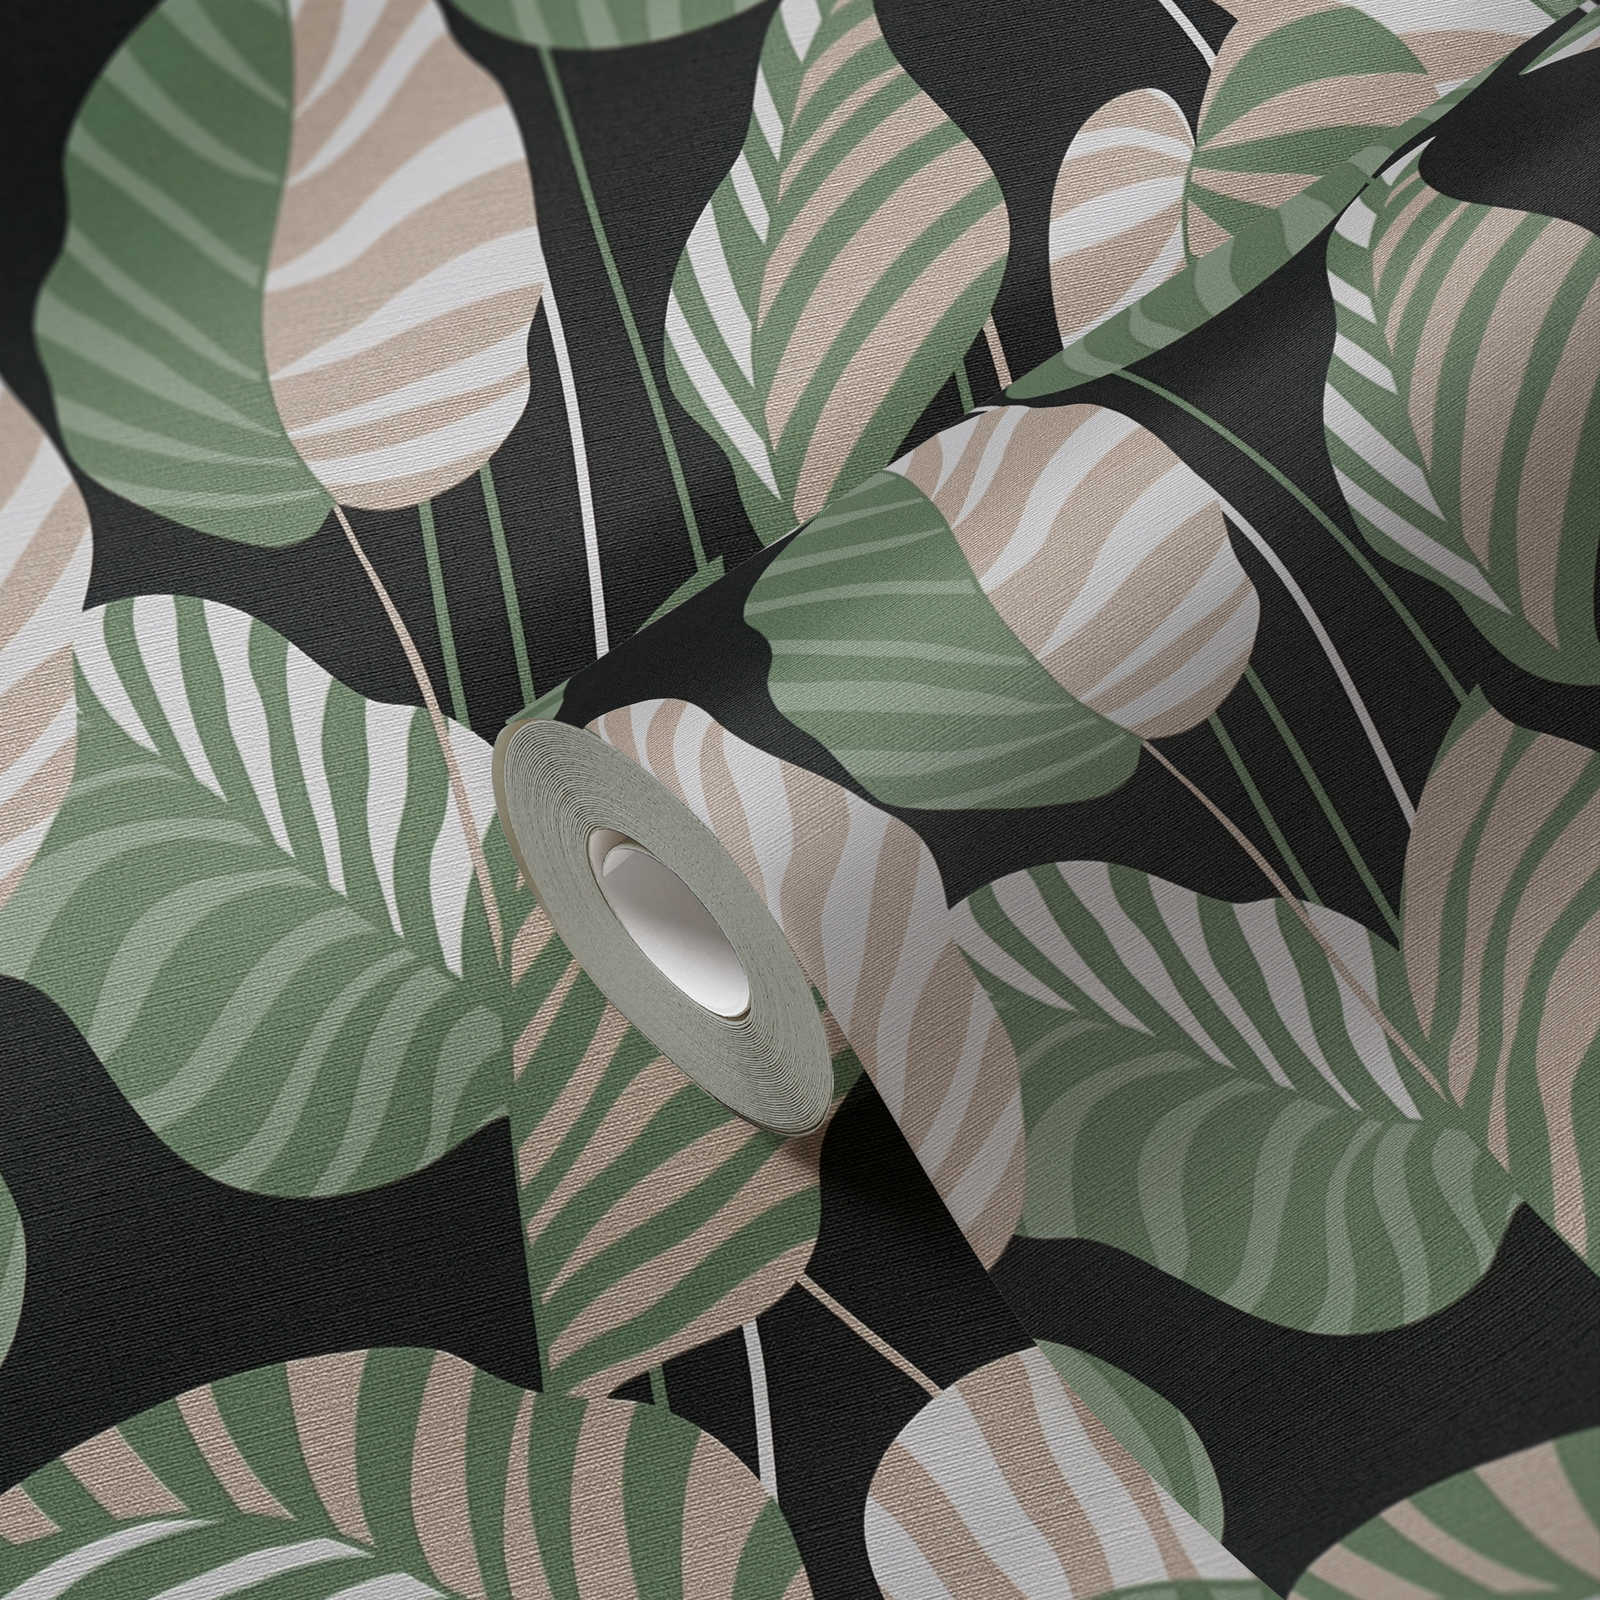             Vliesbehang met palmbladeren in een lichte glans - zwart, groen, goud
        